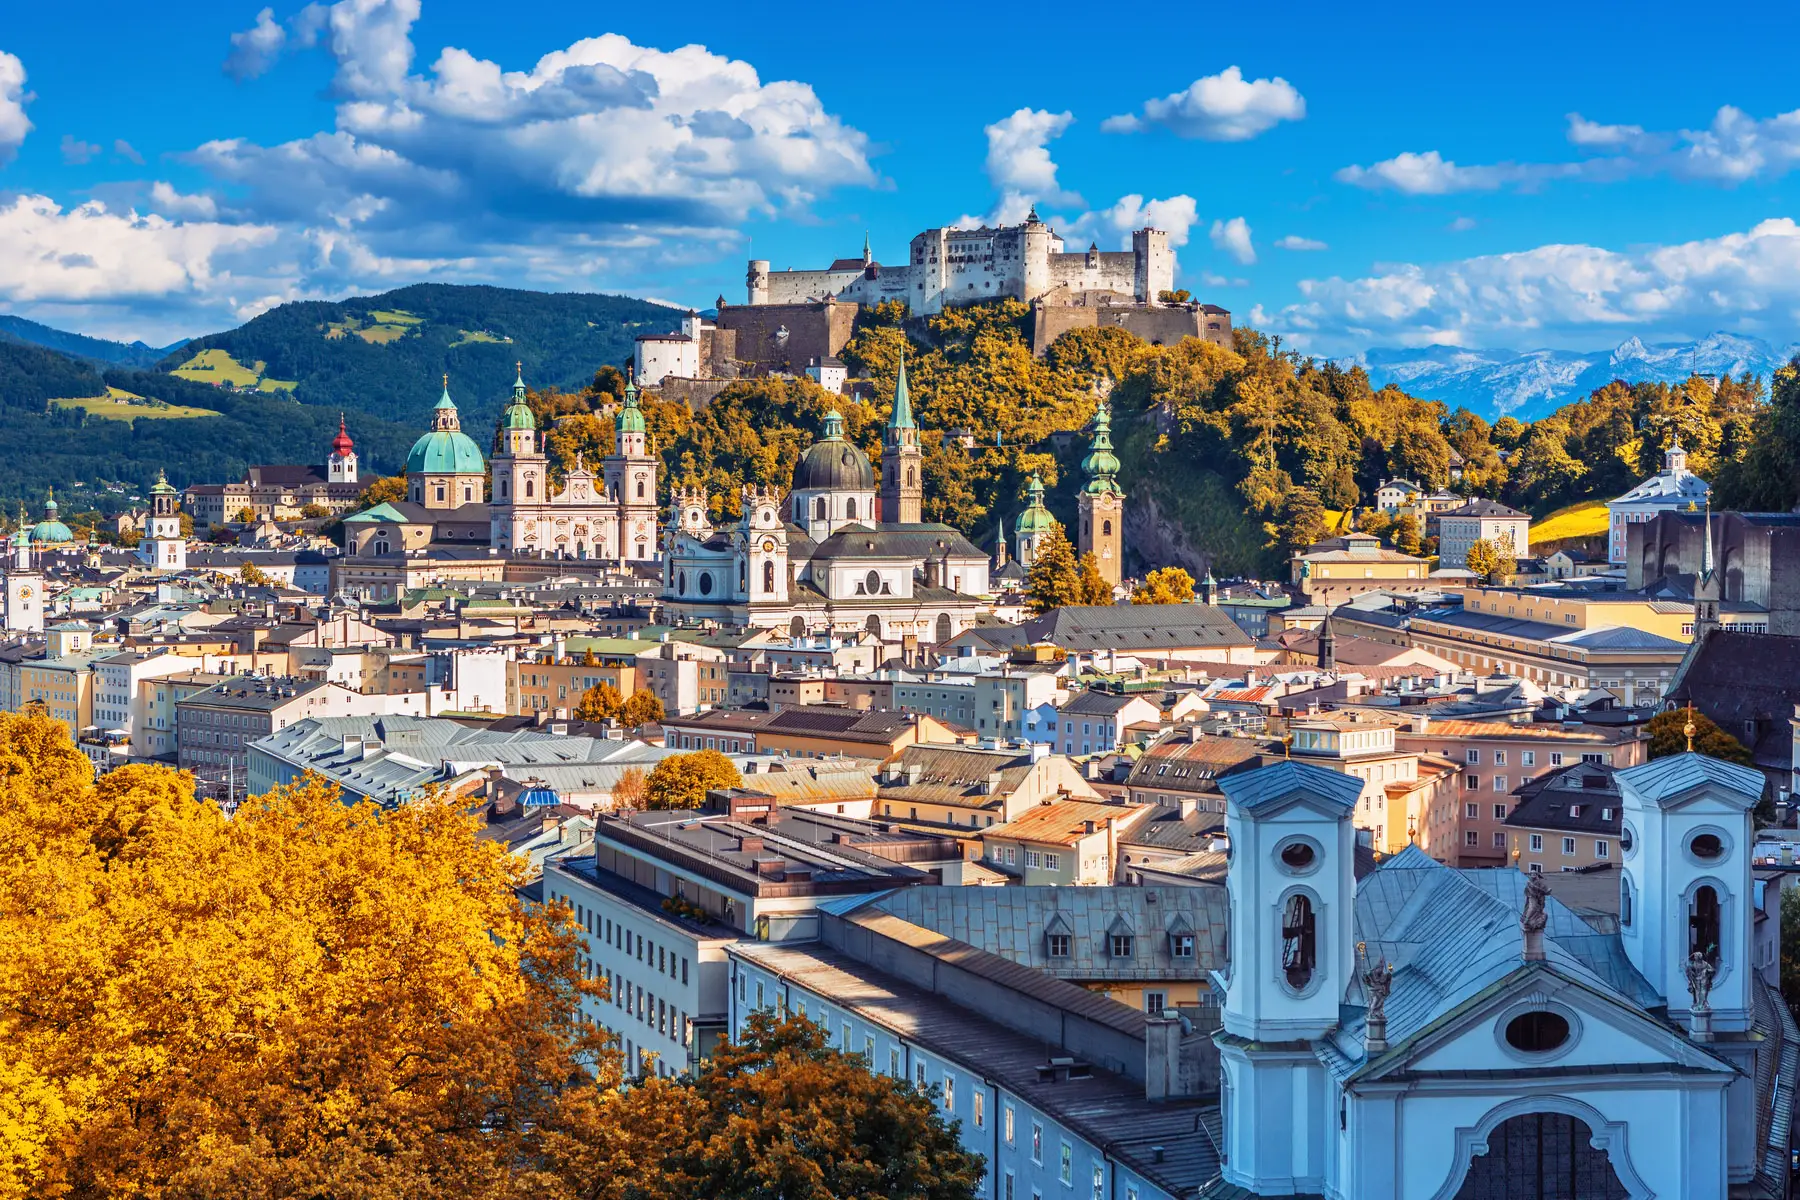 Salzburg on a sunny autumn day